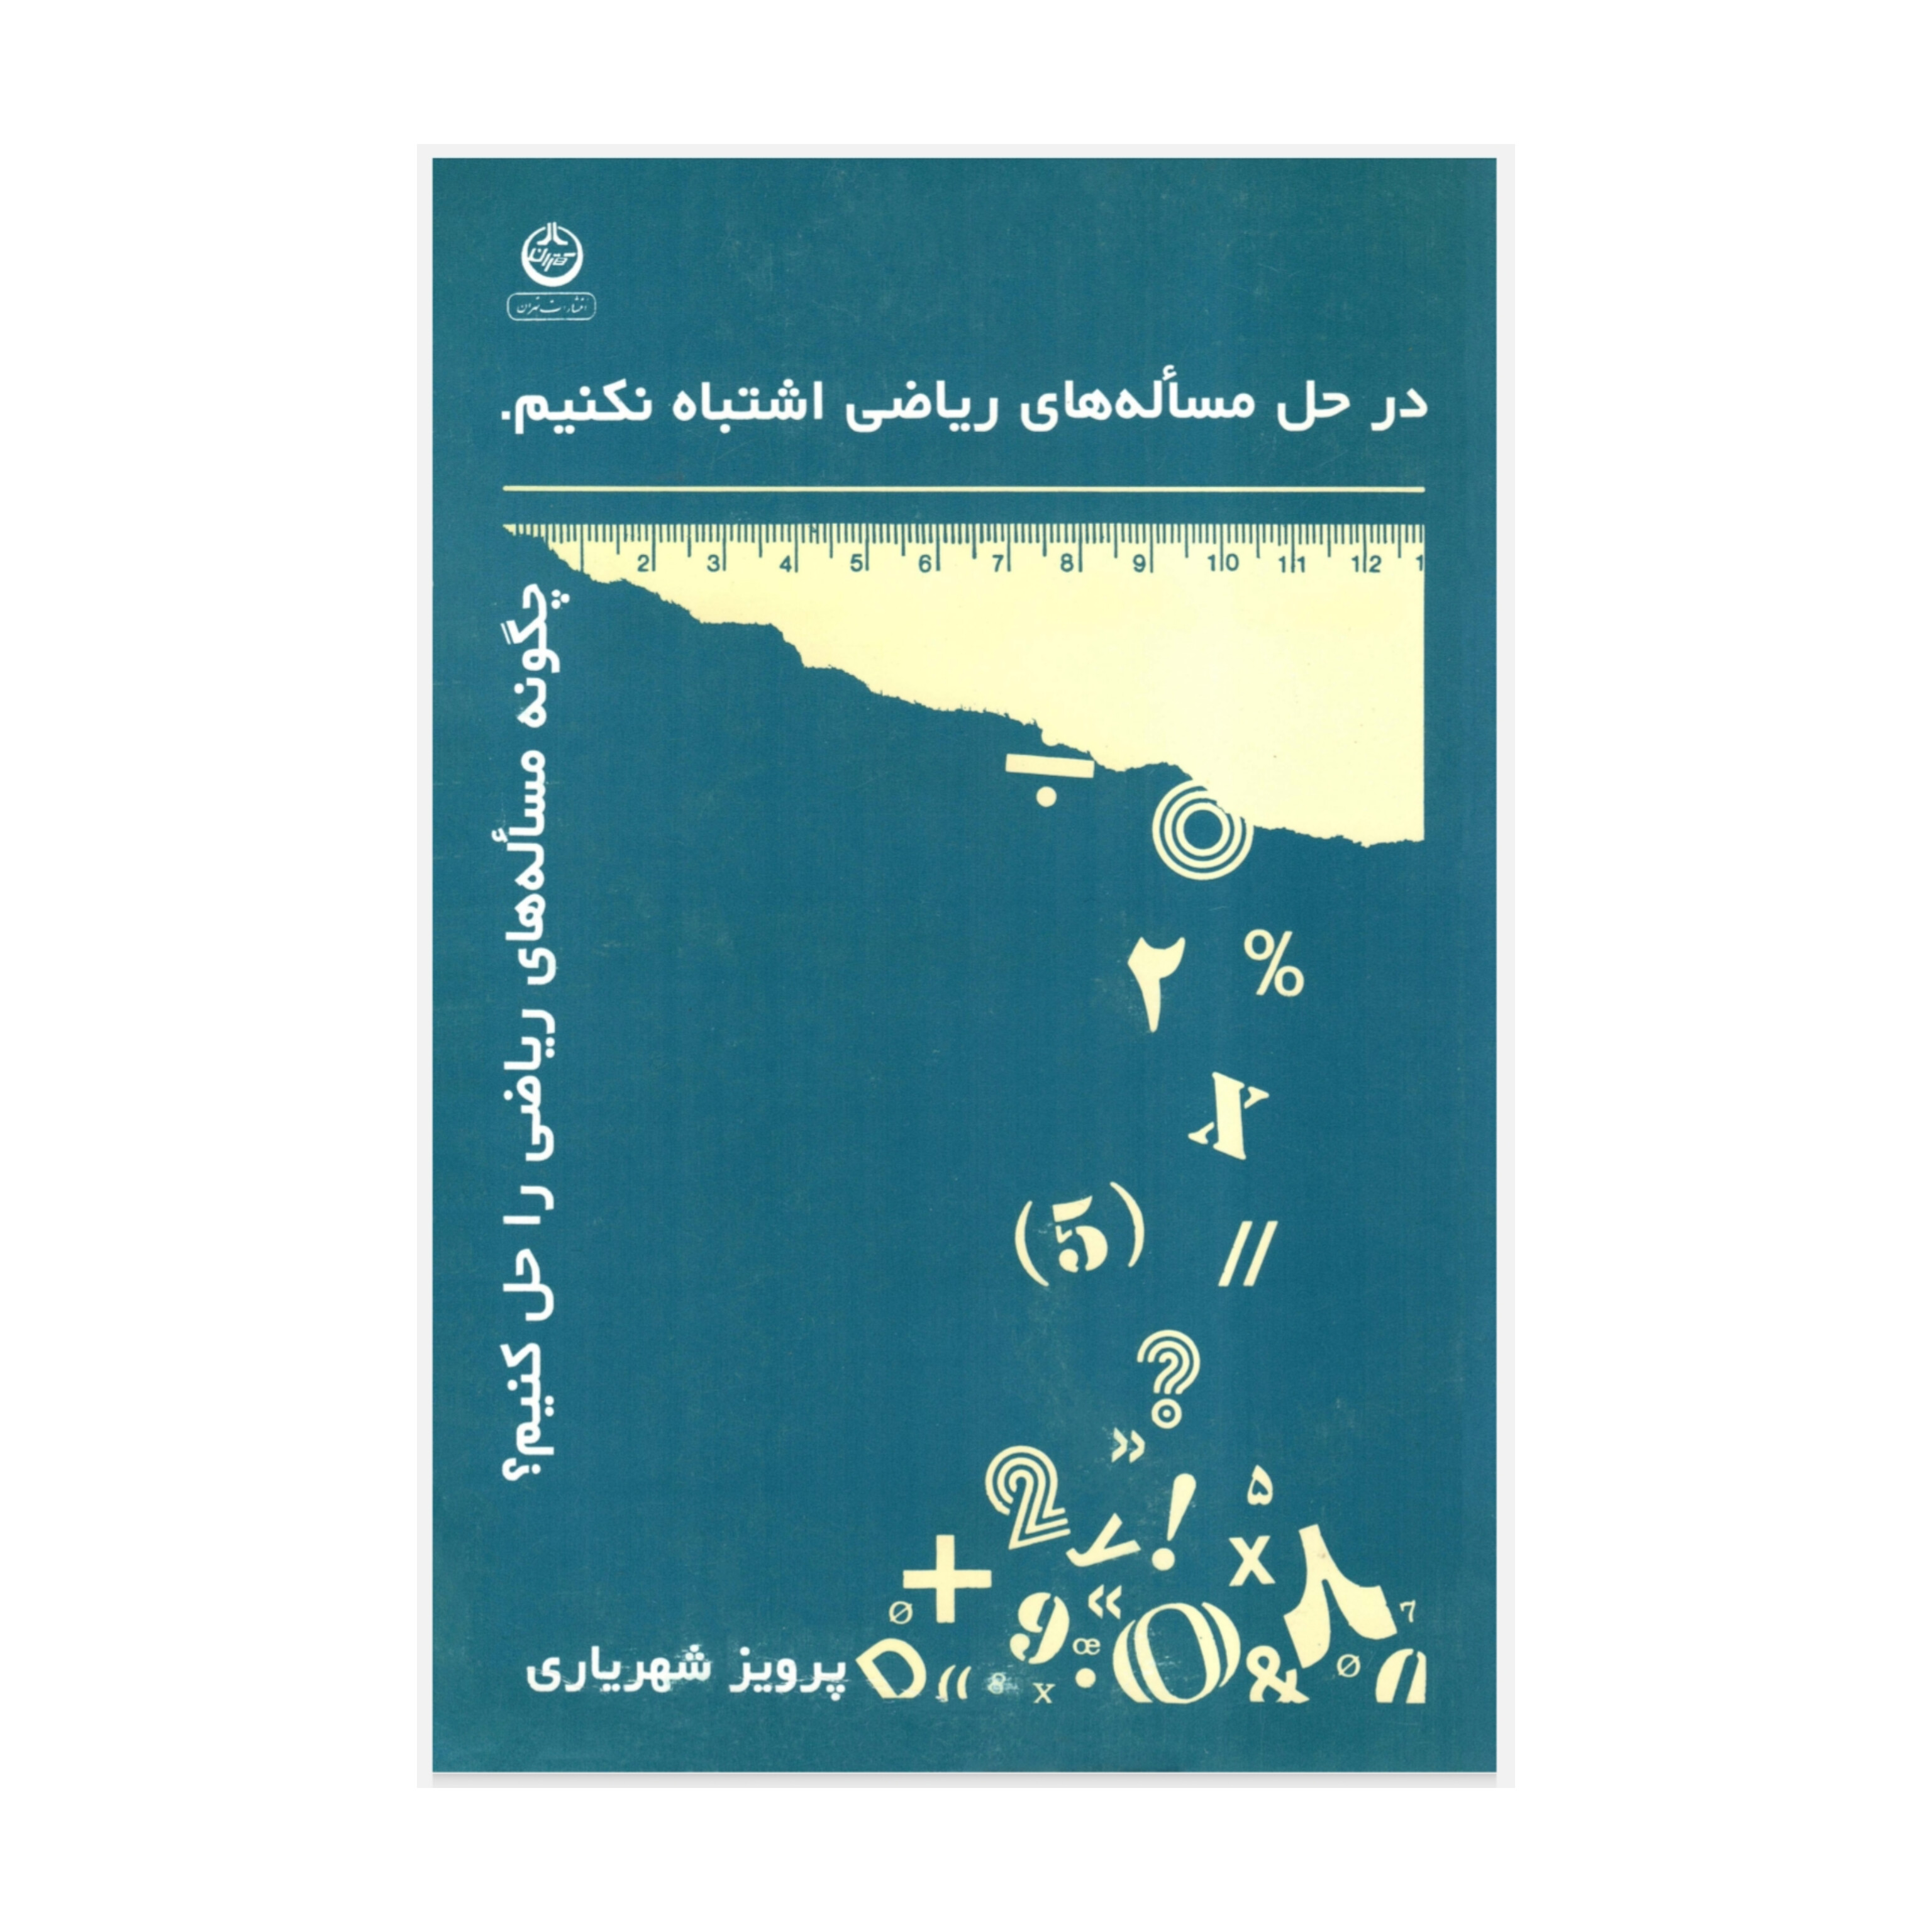 کتاب در حل مساله های ریاضی اشتباه نکنیم (چگونه مساله های ریاضی را حل کنیم)/ پرویز شهریاری